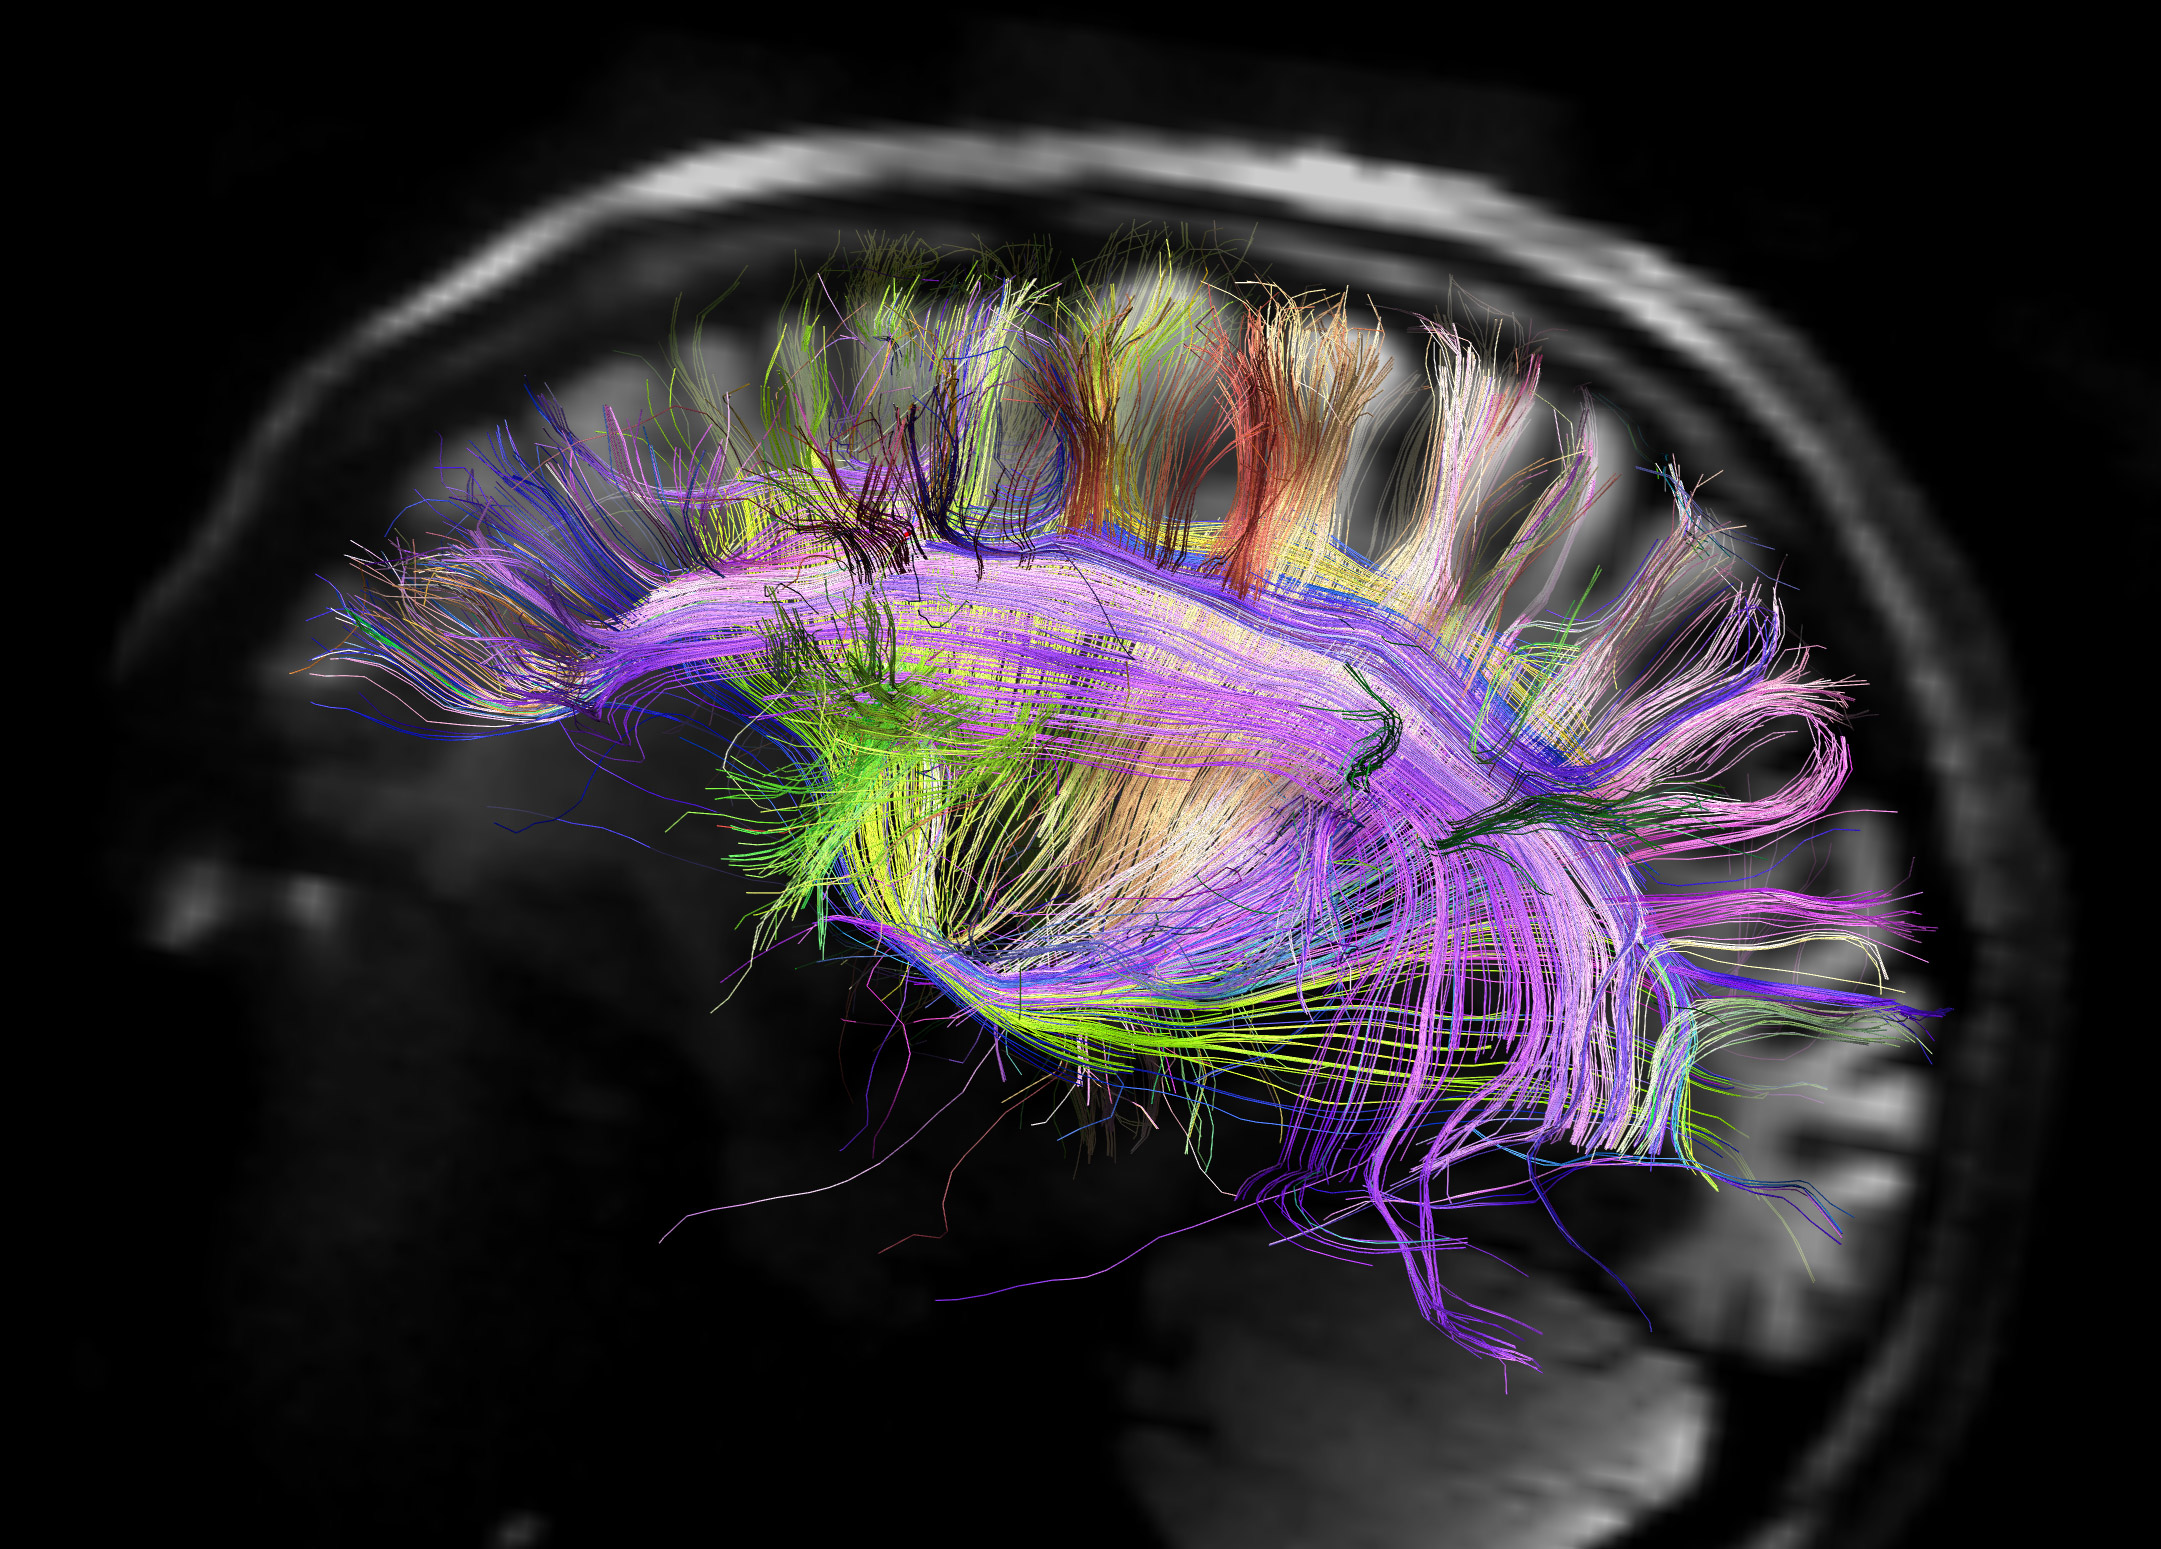 Imagen de resonancia magnética del cerebro humano que muestra las curvas de fibras neuronales.